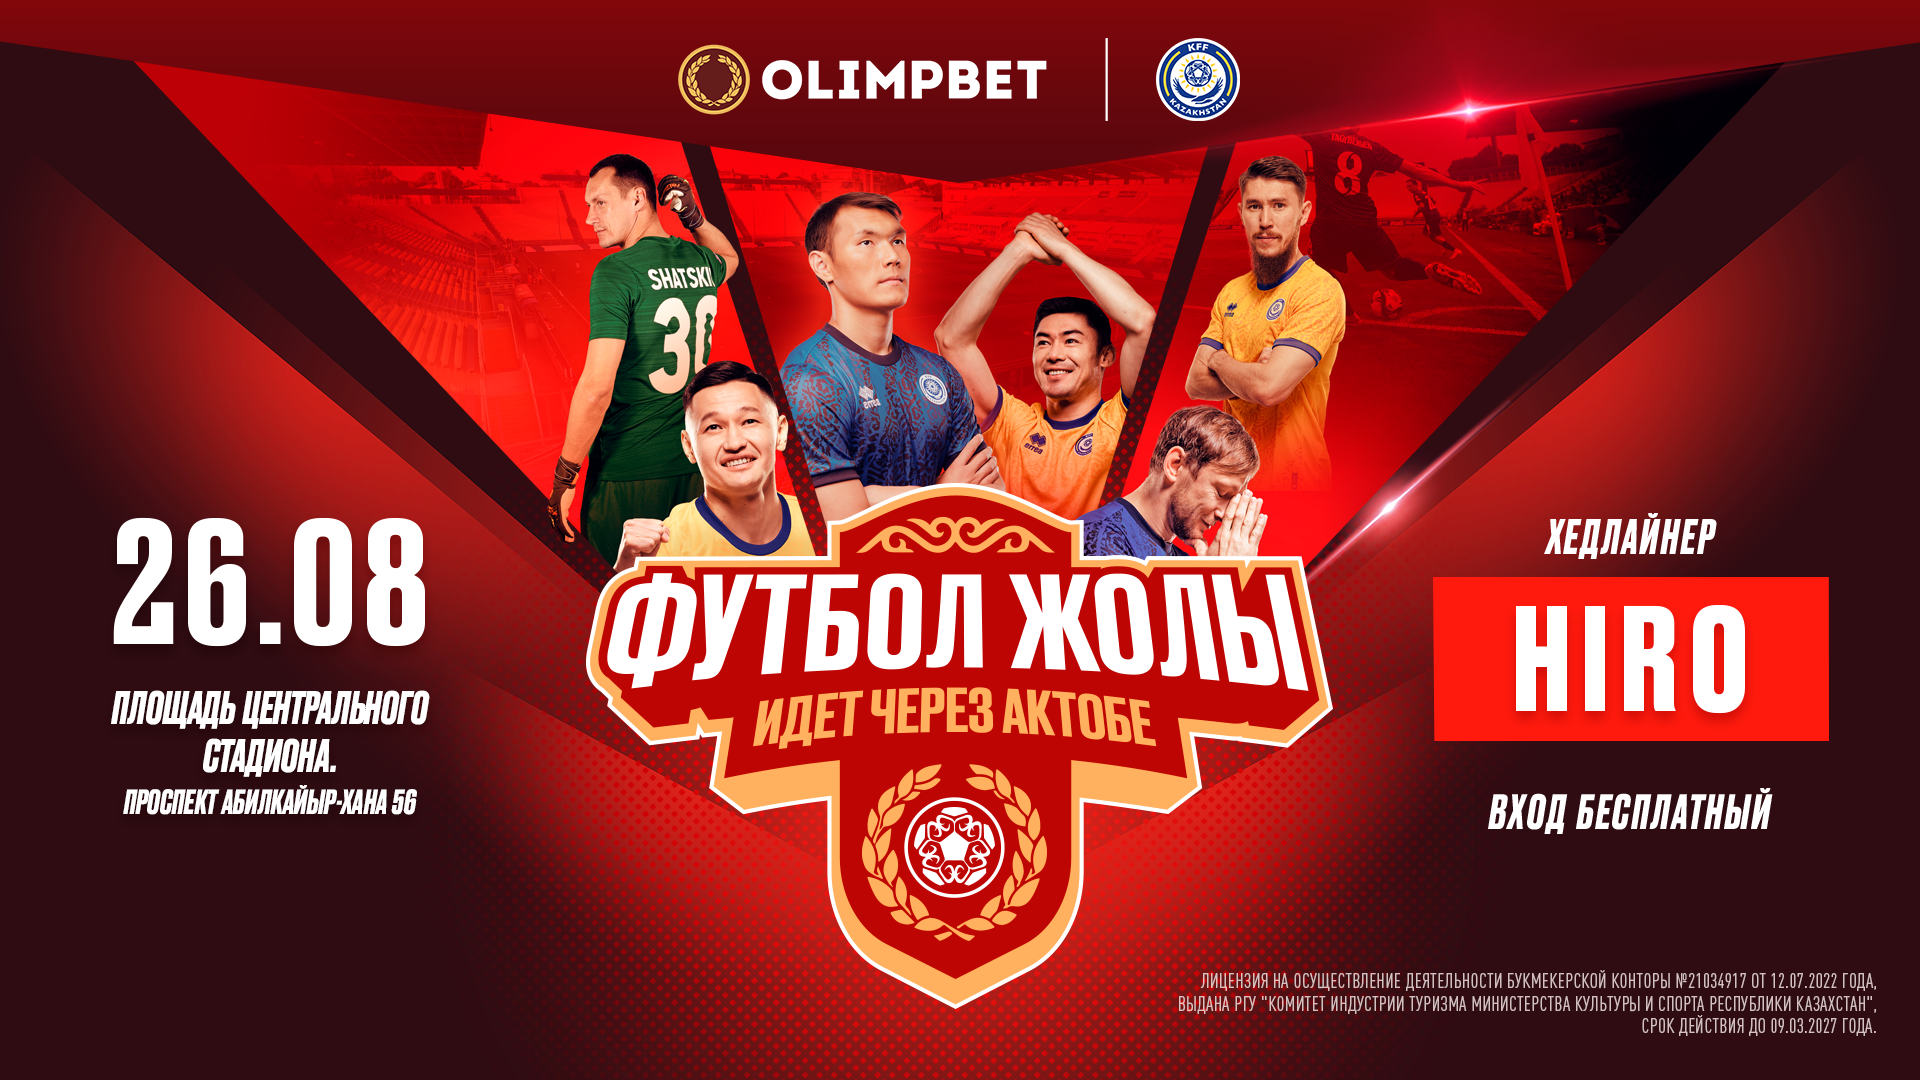 БК Olimpbet анонсировал проведение фестиваля «Футбол жолы» в Актобе